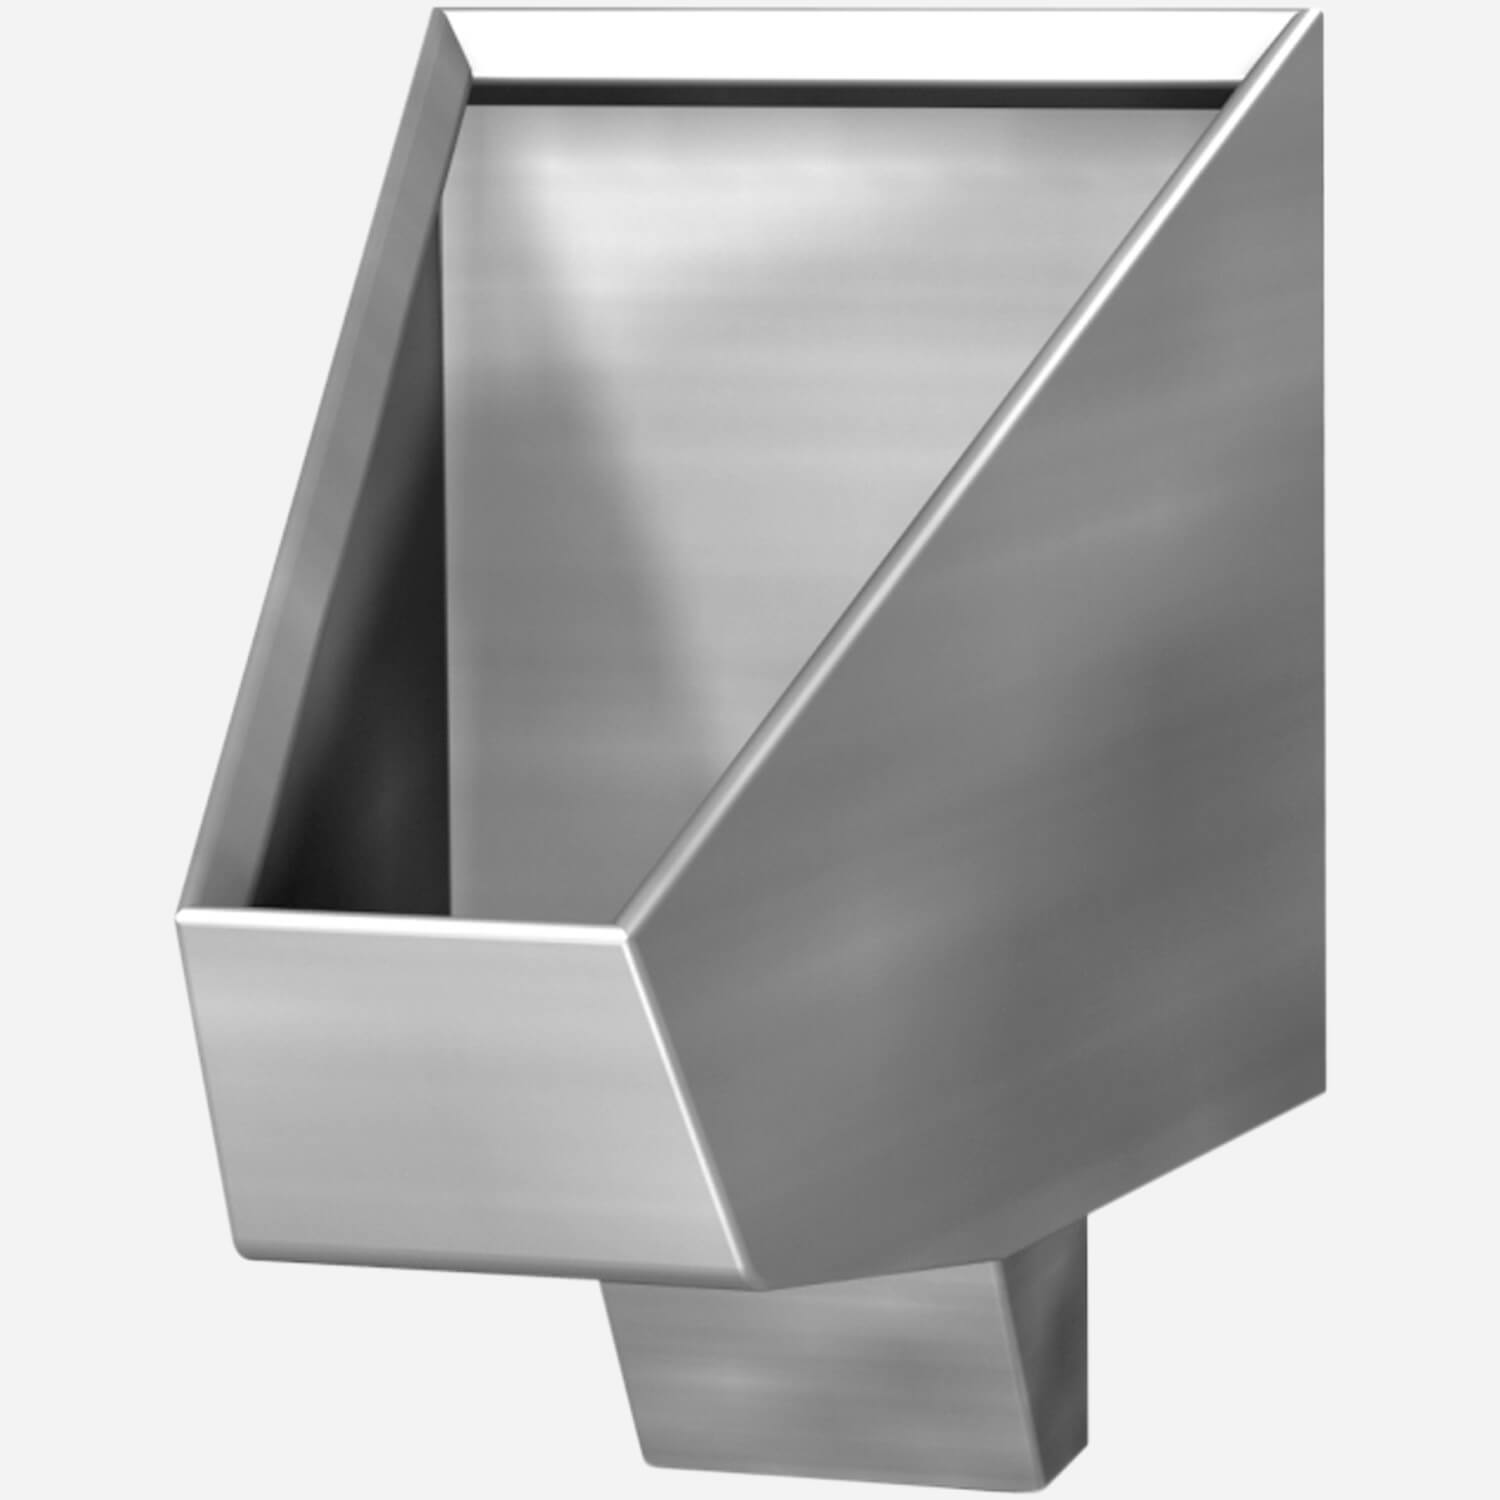 2175 - Trough Urinal  5 Foot Stainless Steel - Acorn Engineering